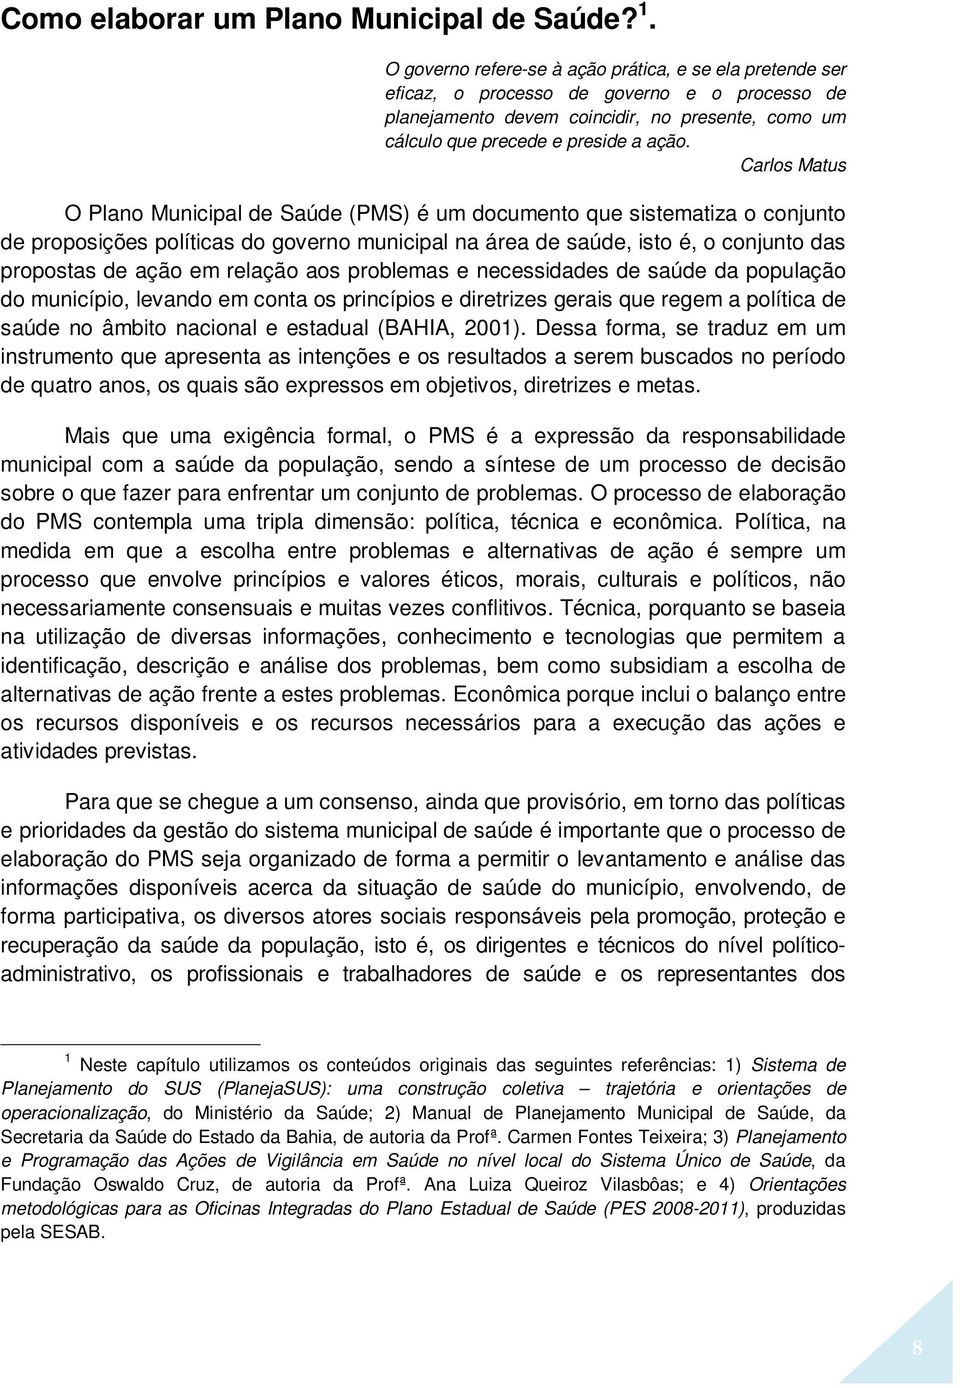 Carlos Matus O Plano Municipal de Saúde (PMS) é um documento que sistematiza o conjunto de proposições políticas do governo municipal na área de saúde, isto é, o conjunto das propostas de ação em